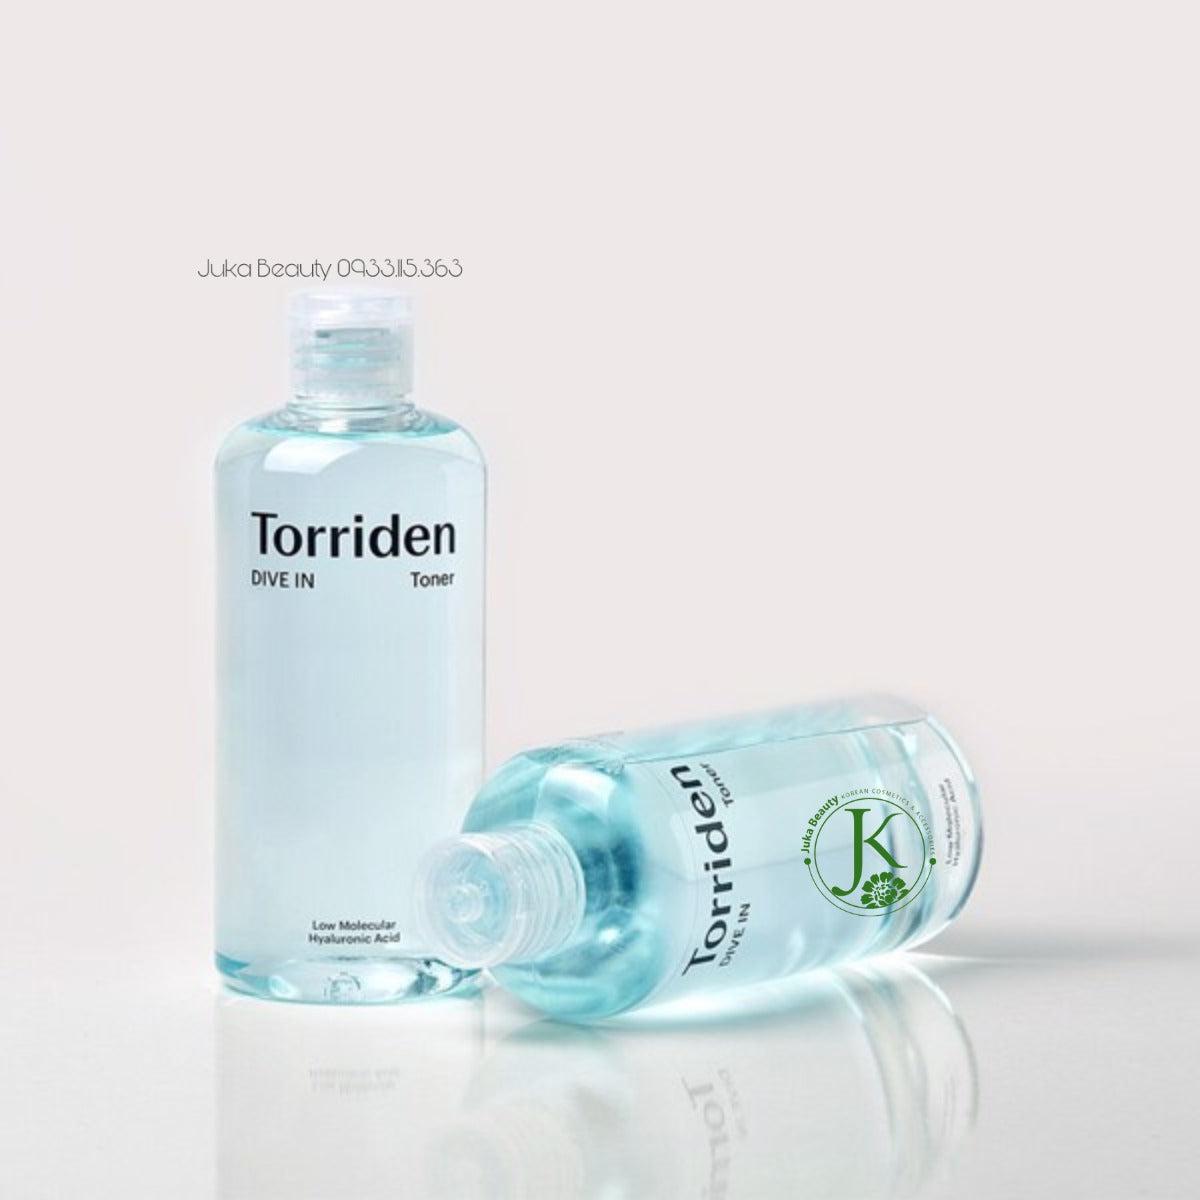 TORRIDEN Dive-In Low Molecular Hyaluronic Acid Toner 300ml